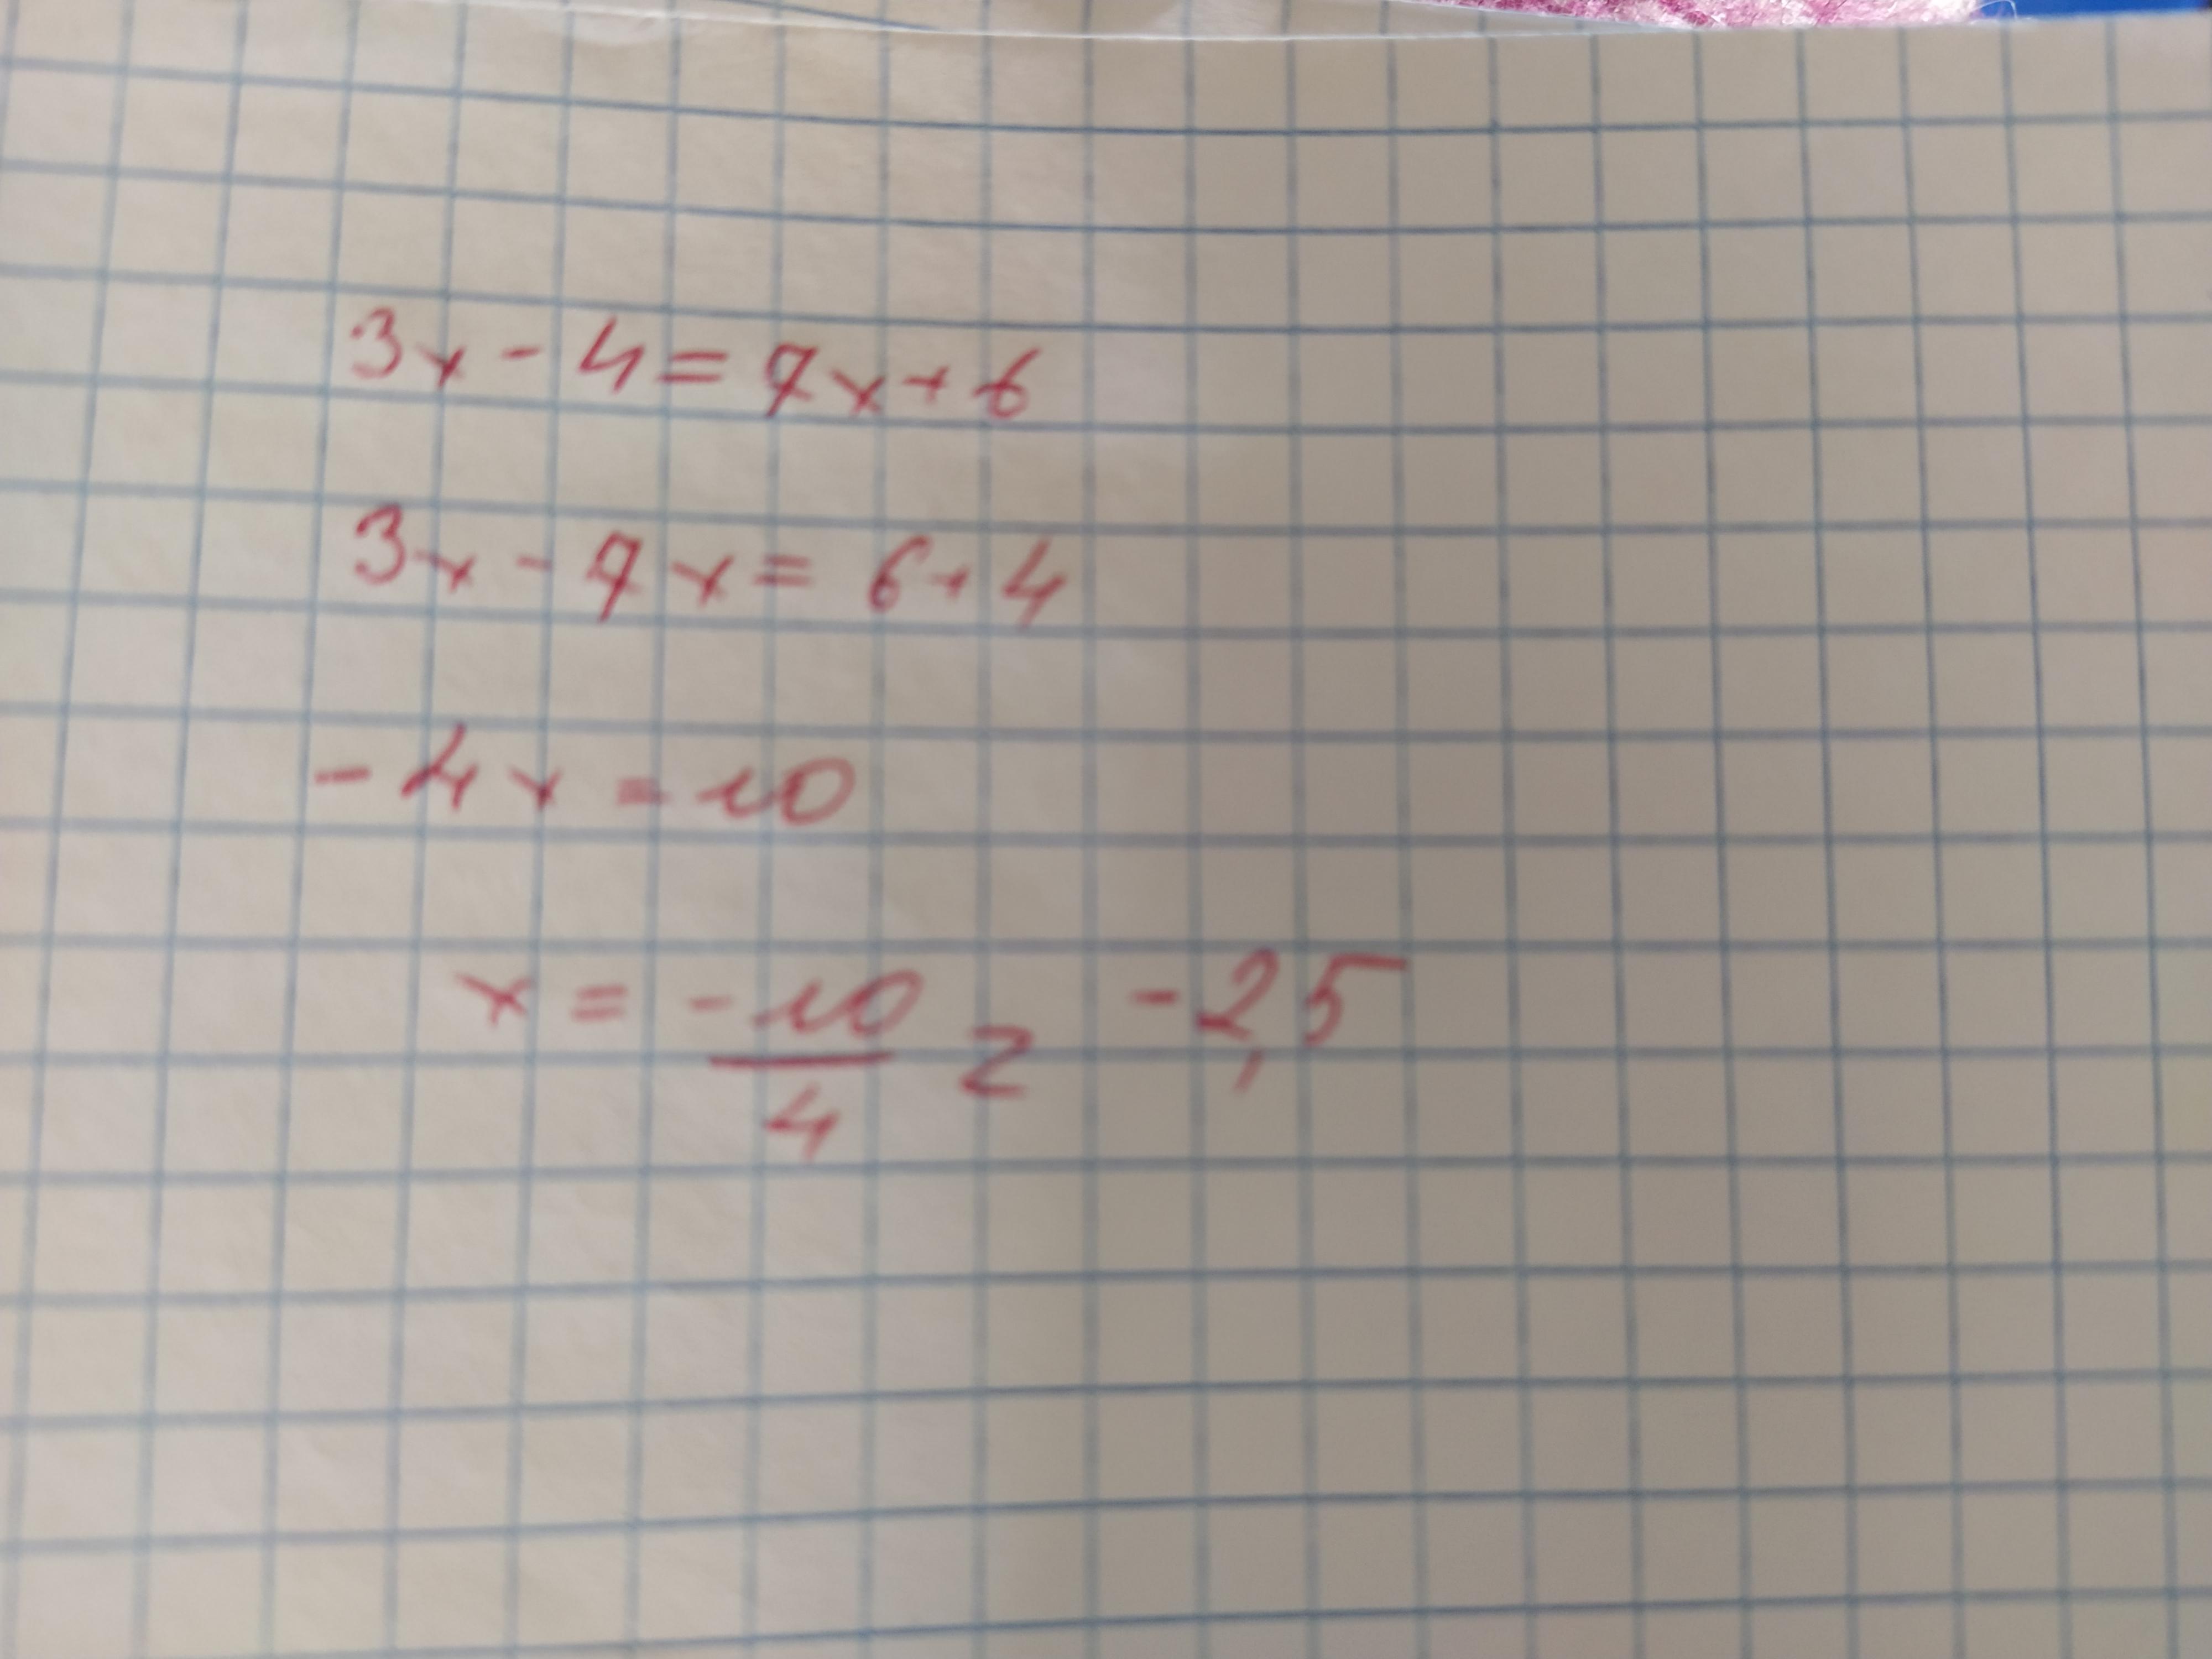 3 x 7 2x 9 13. При каких значениях x. X^3-7x+6. -6+6 Равно. 6-7x< 3x-7.